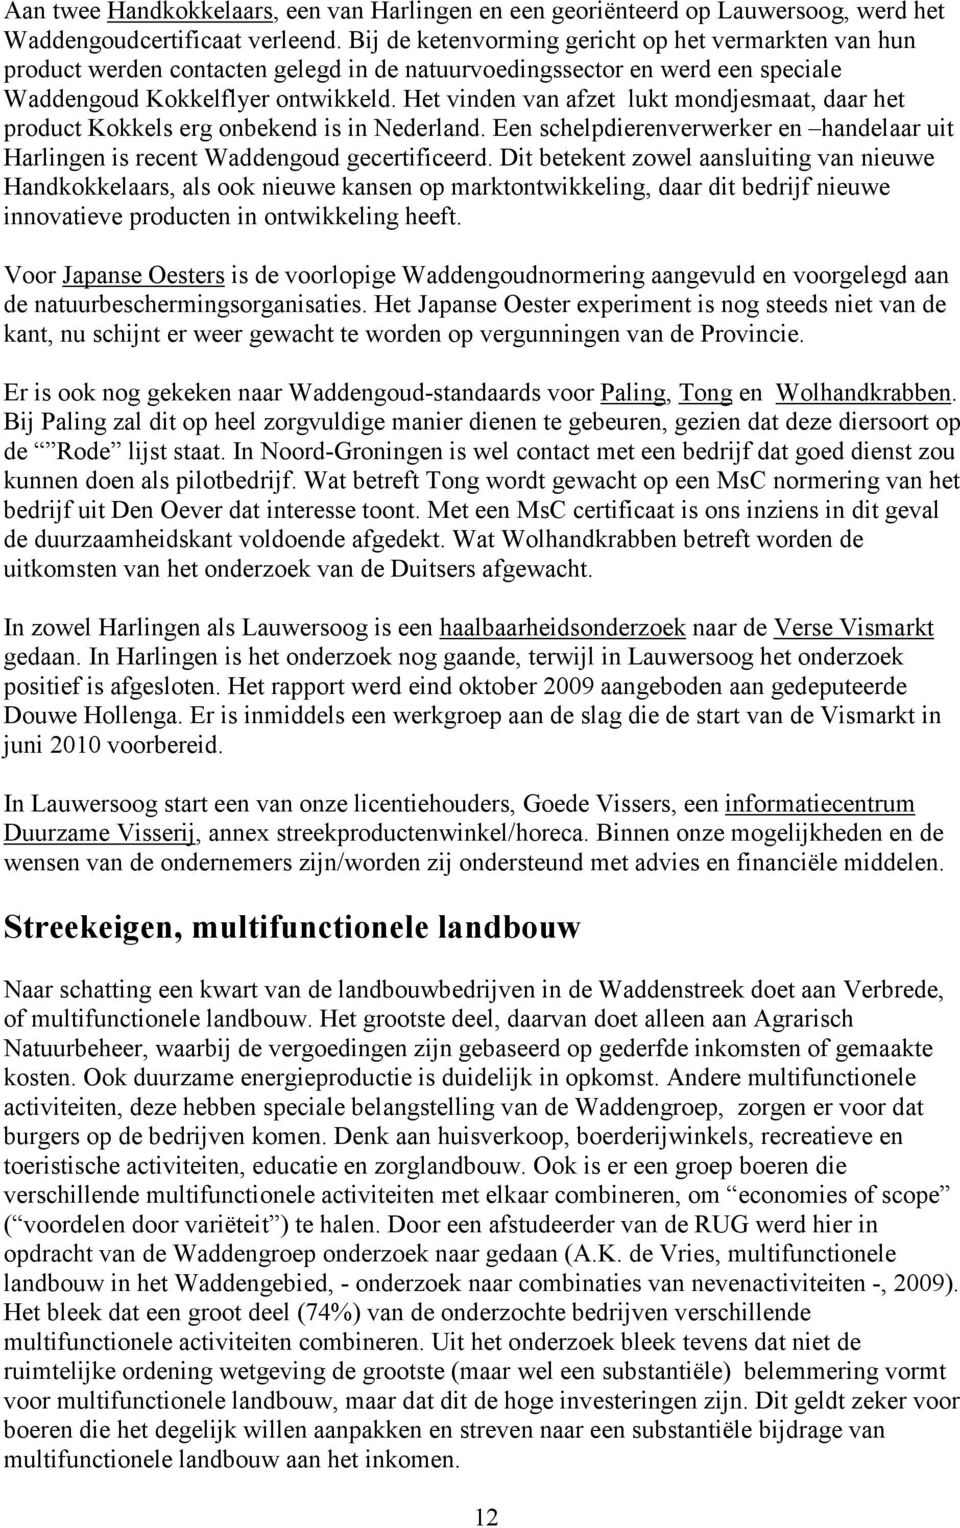 Het vinden van afzet lukt mondjesmaat, daar het product Kokkels erg onbekend is in Nederland. Een schelpdierenverwerker en handelaar uit Harlingen is recent Waddengoud gecertificeerd.